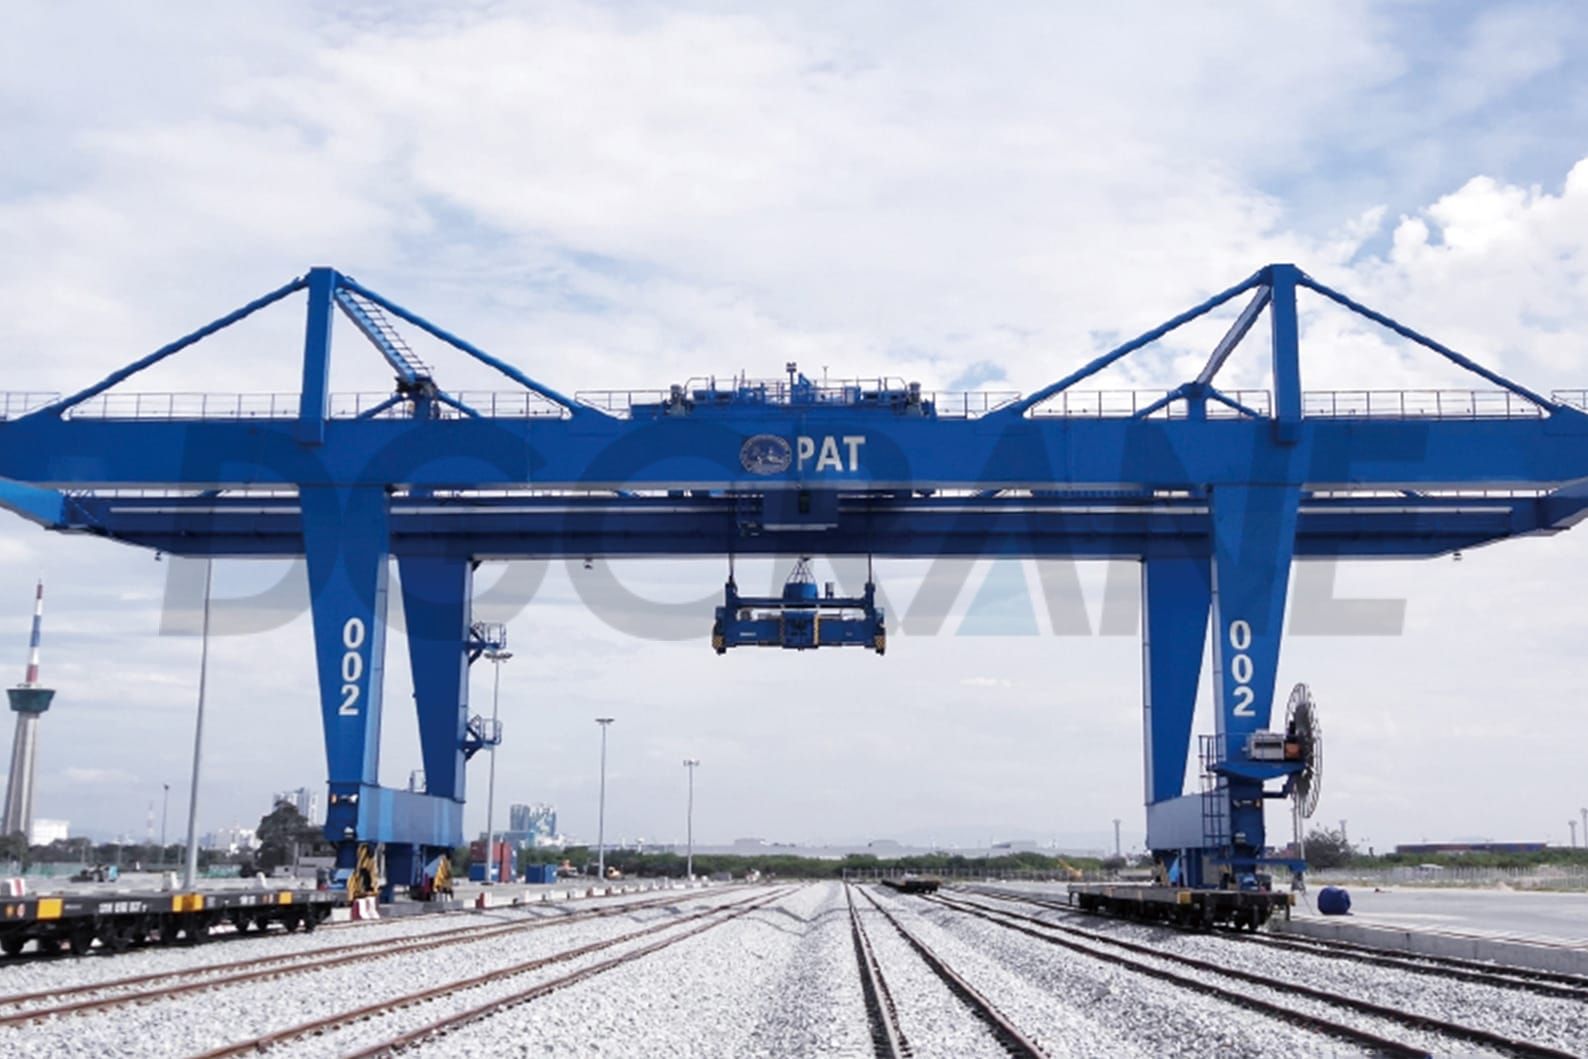 2 Exportación de puertas de grúas rmg al puerto de Tailandia